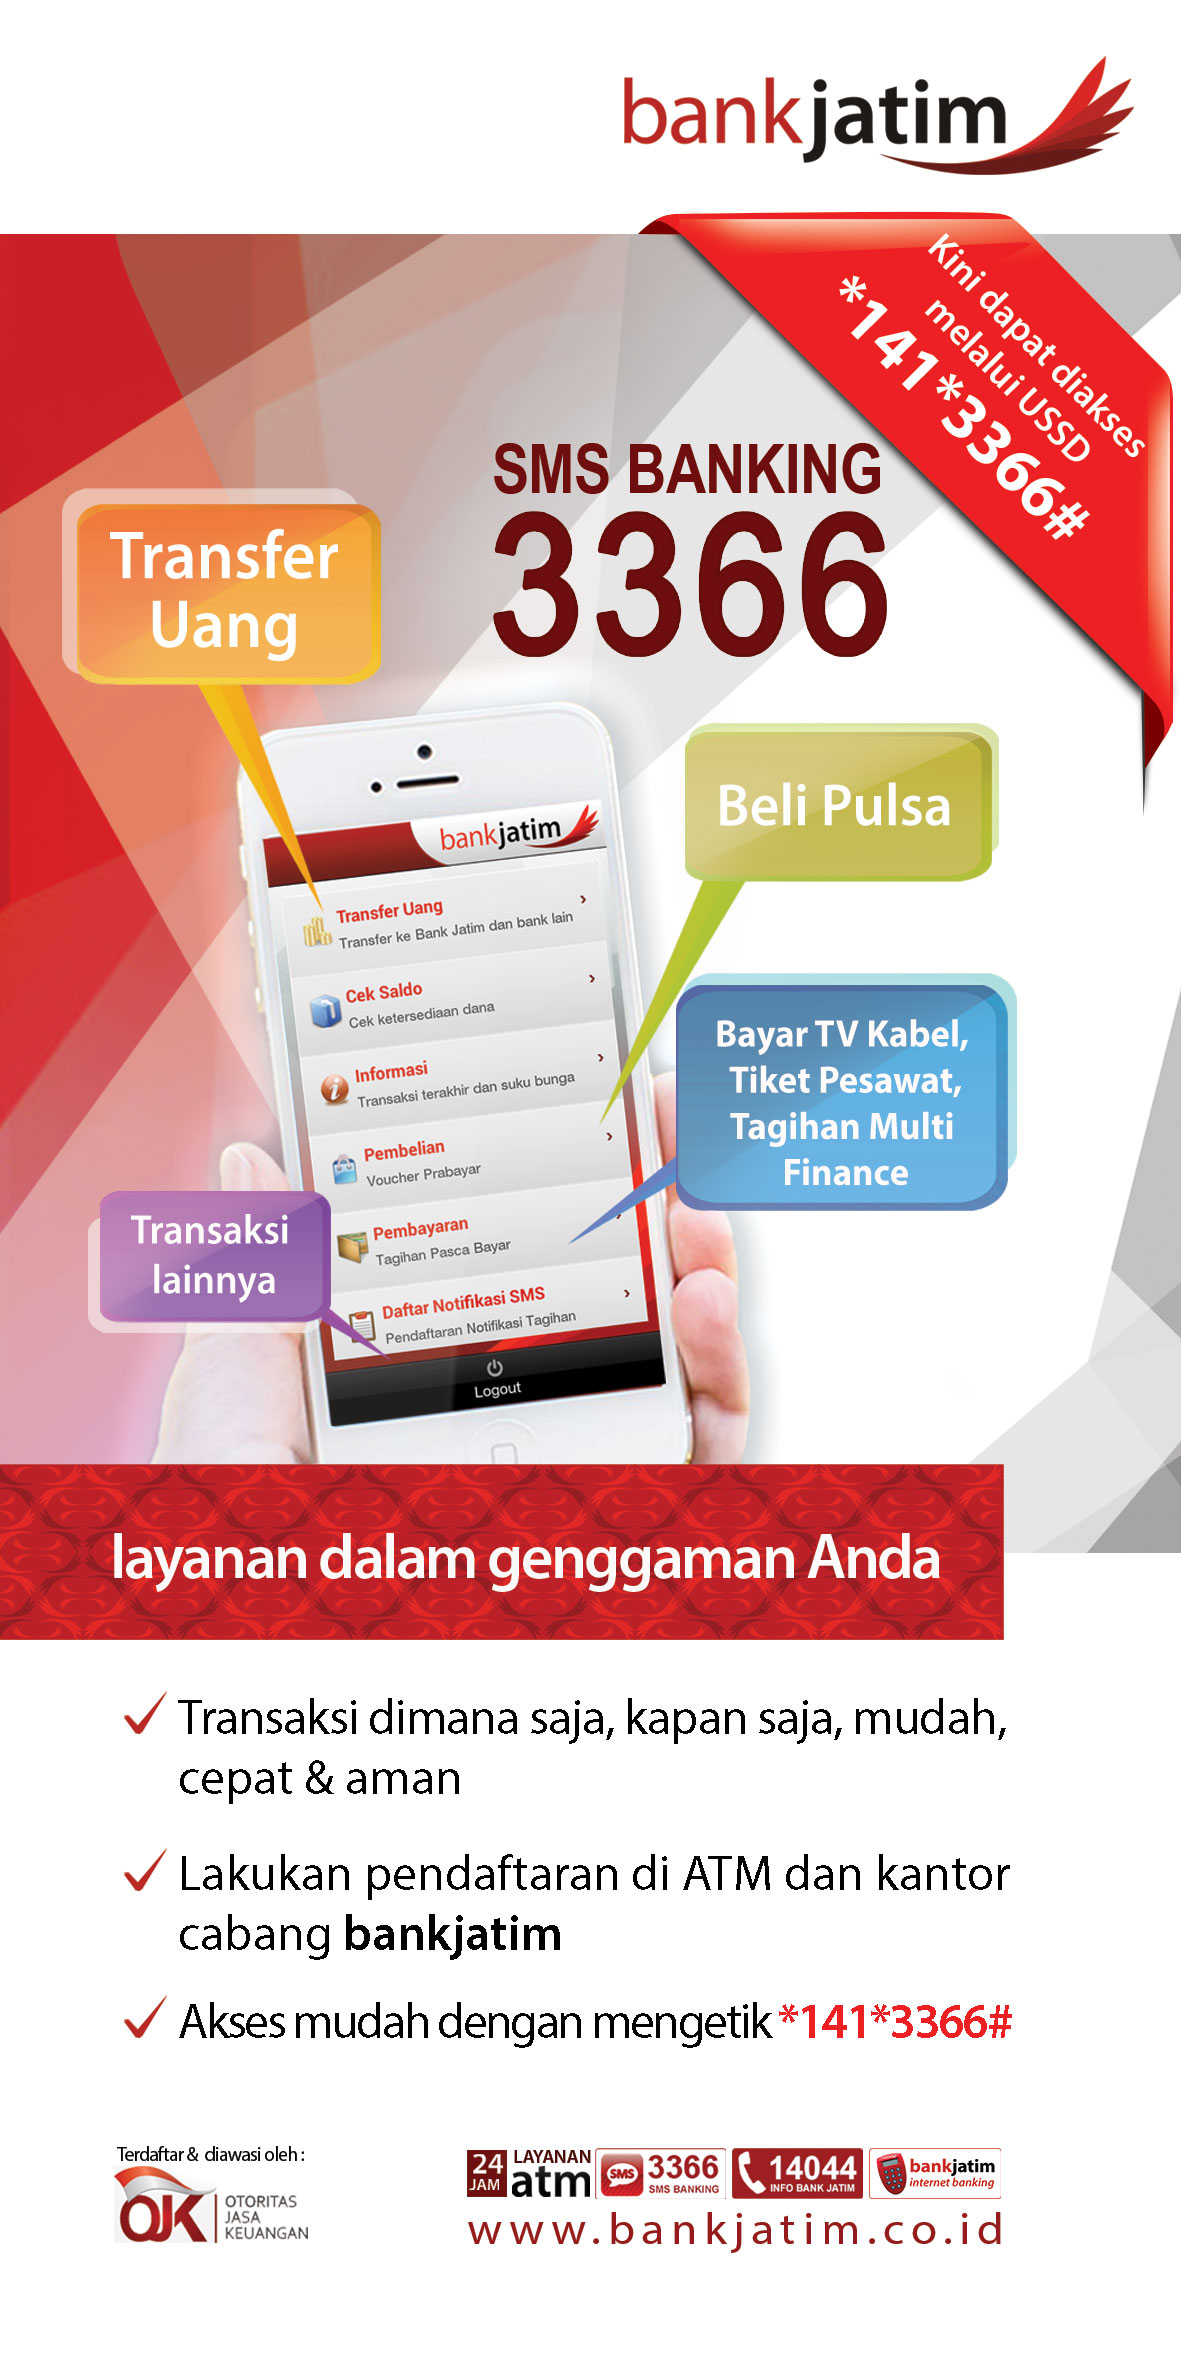 SMS Banking Bank Jatim